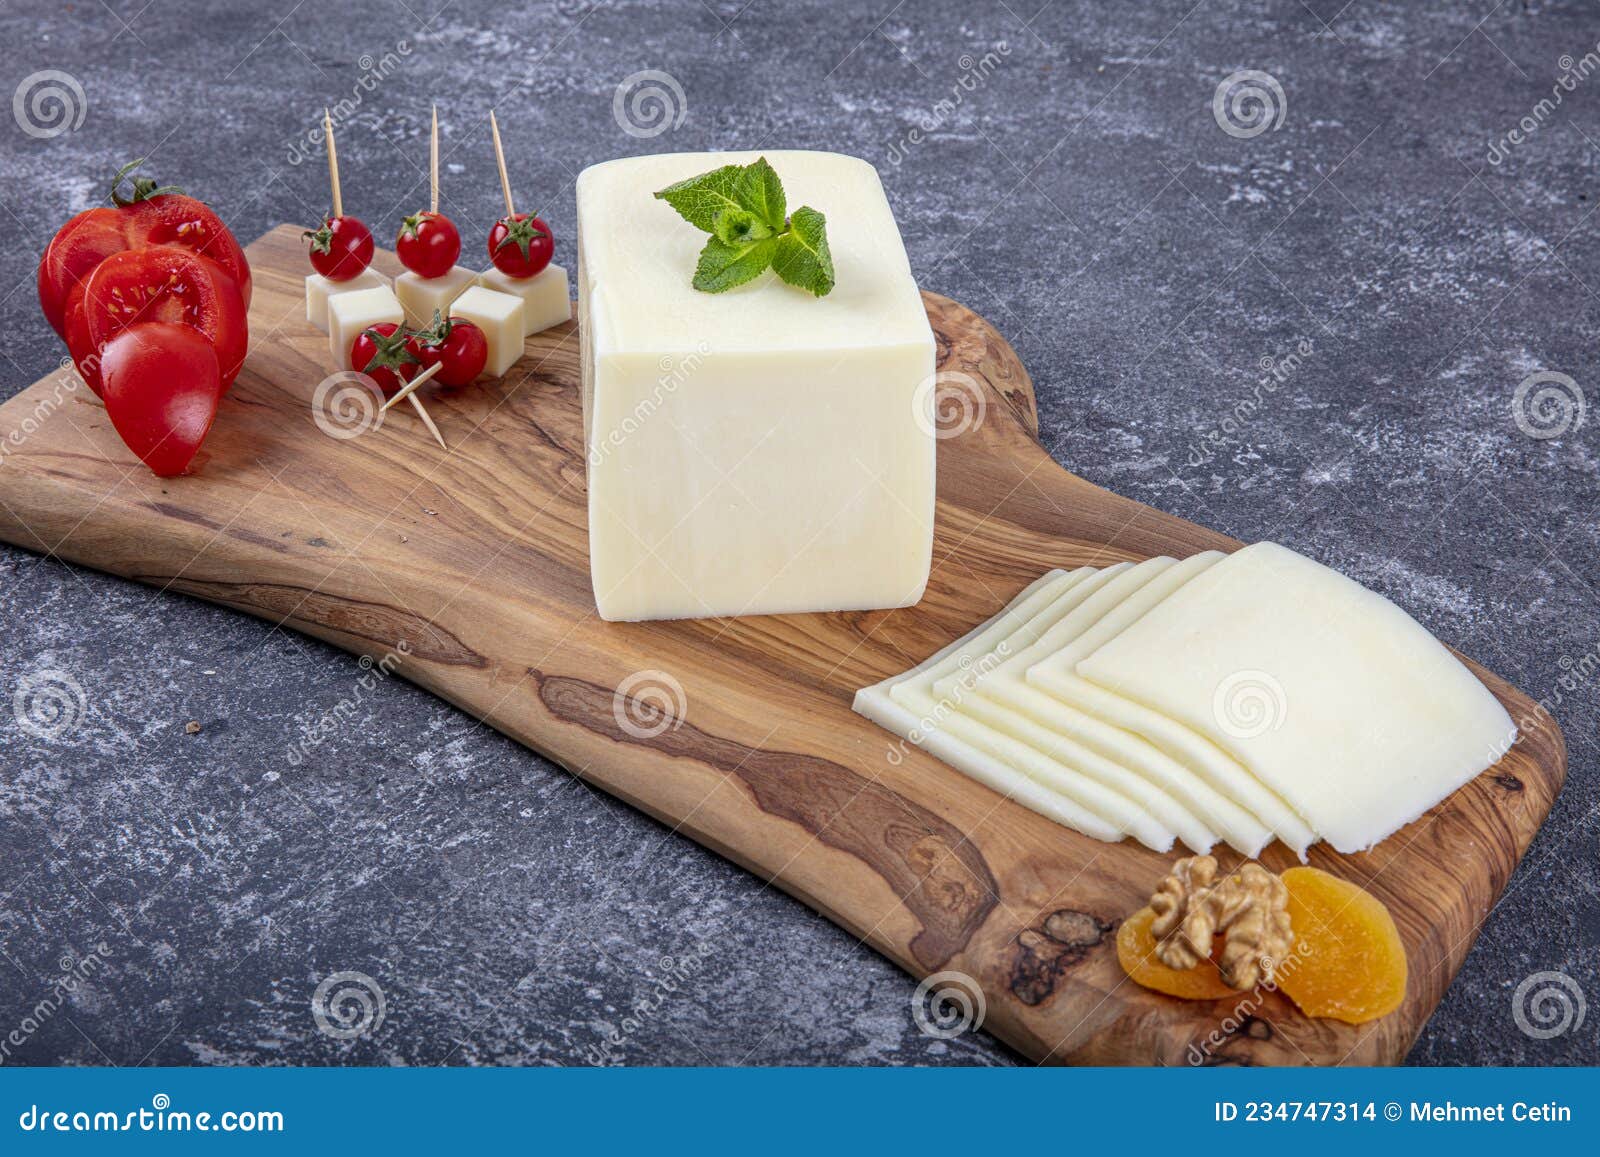 kashar cheese or kashkaval cheese. sliced cheddar cheese. gourmet cheese. local name taze kasar peyniri